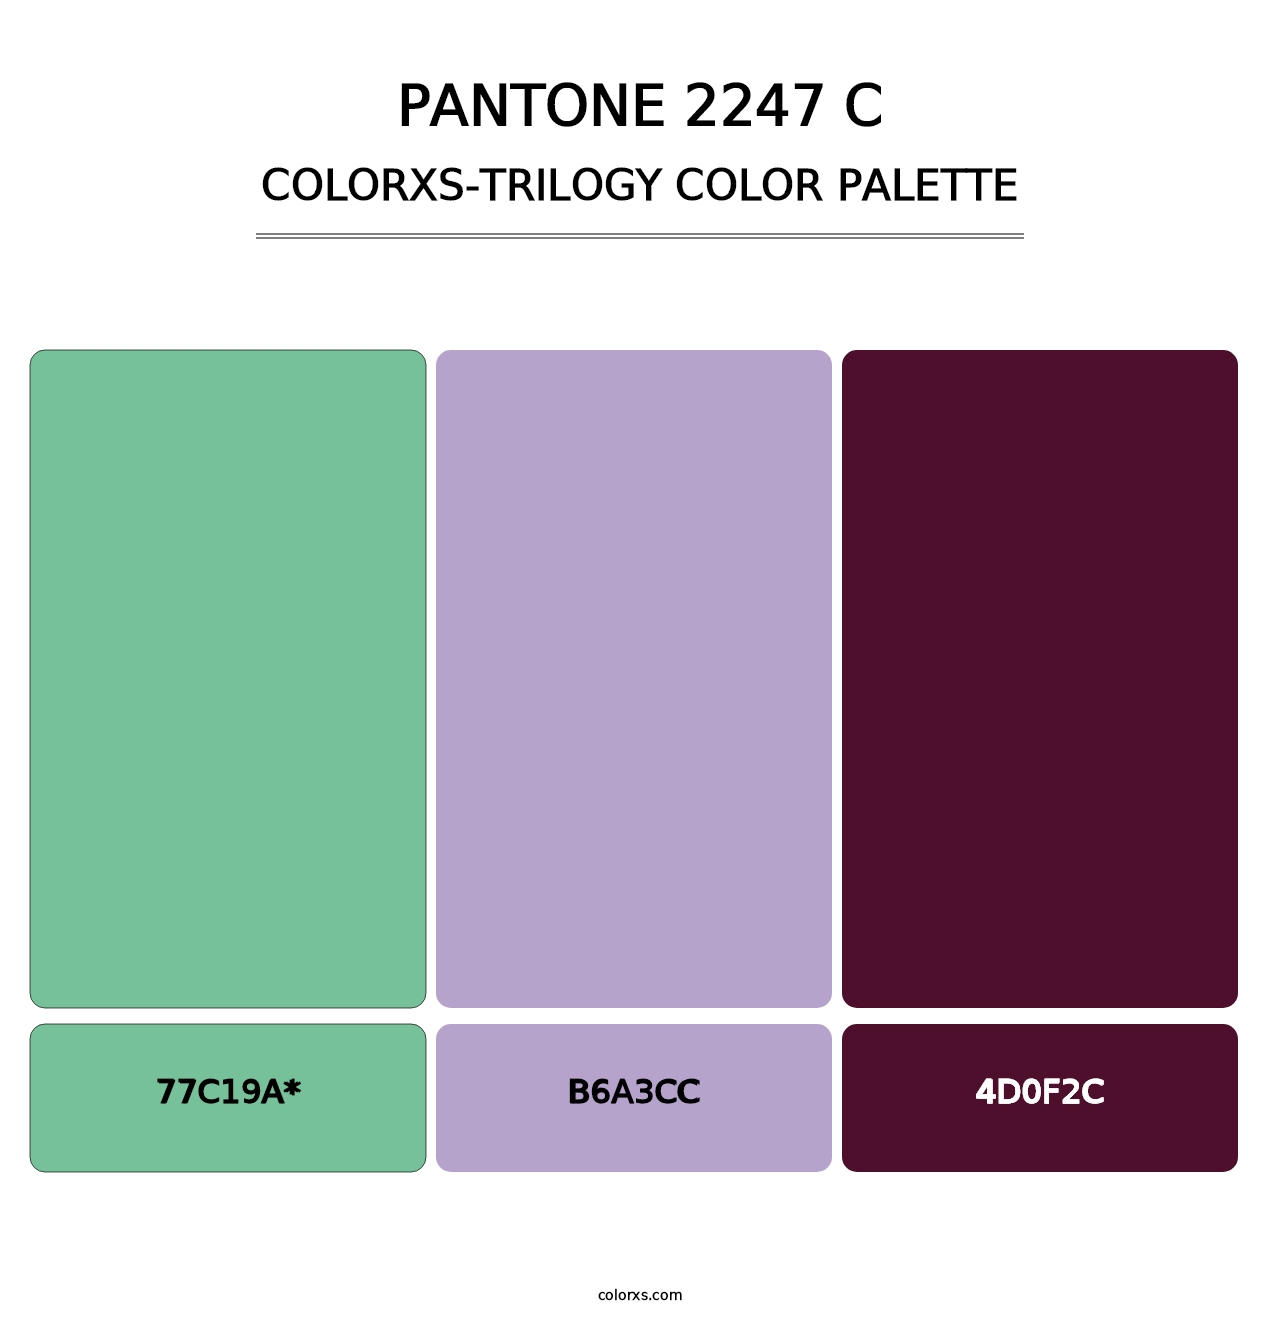 PANTONE 2247 C - Colorxs Trilogy Palette